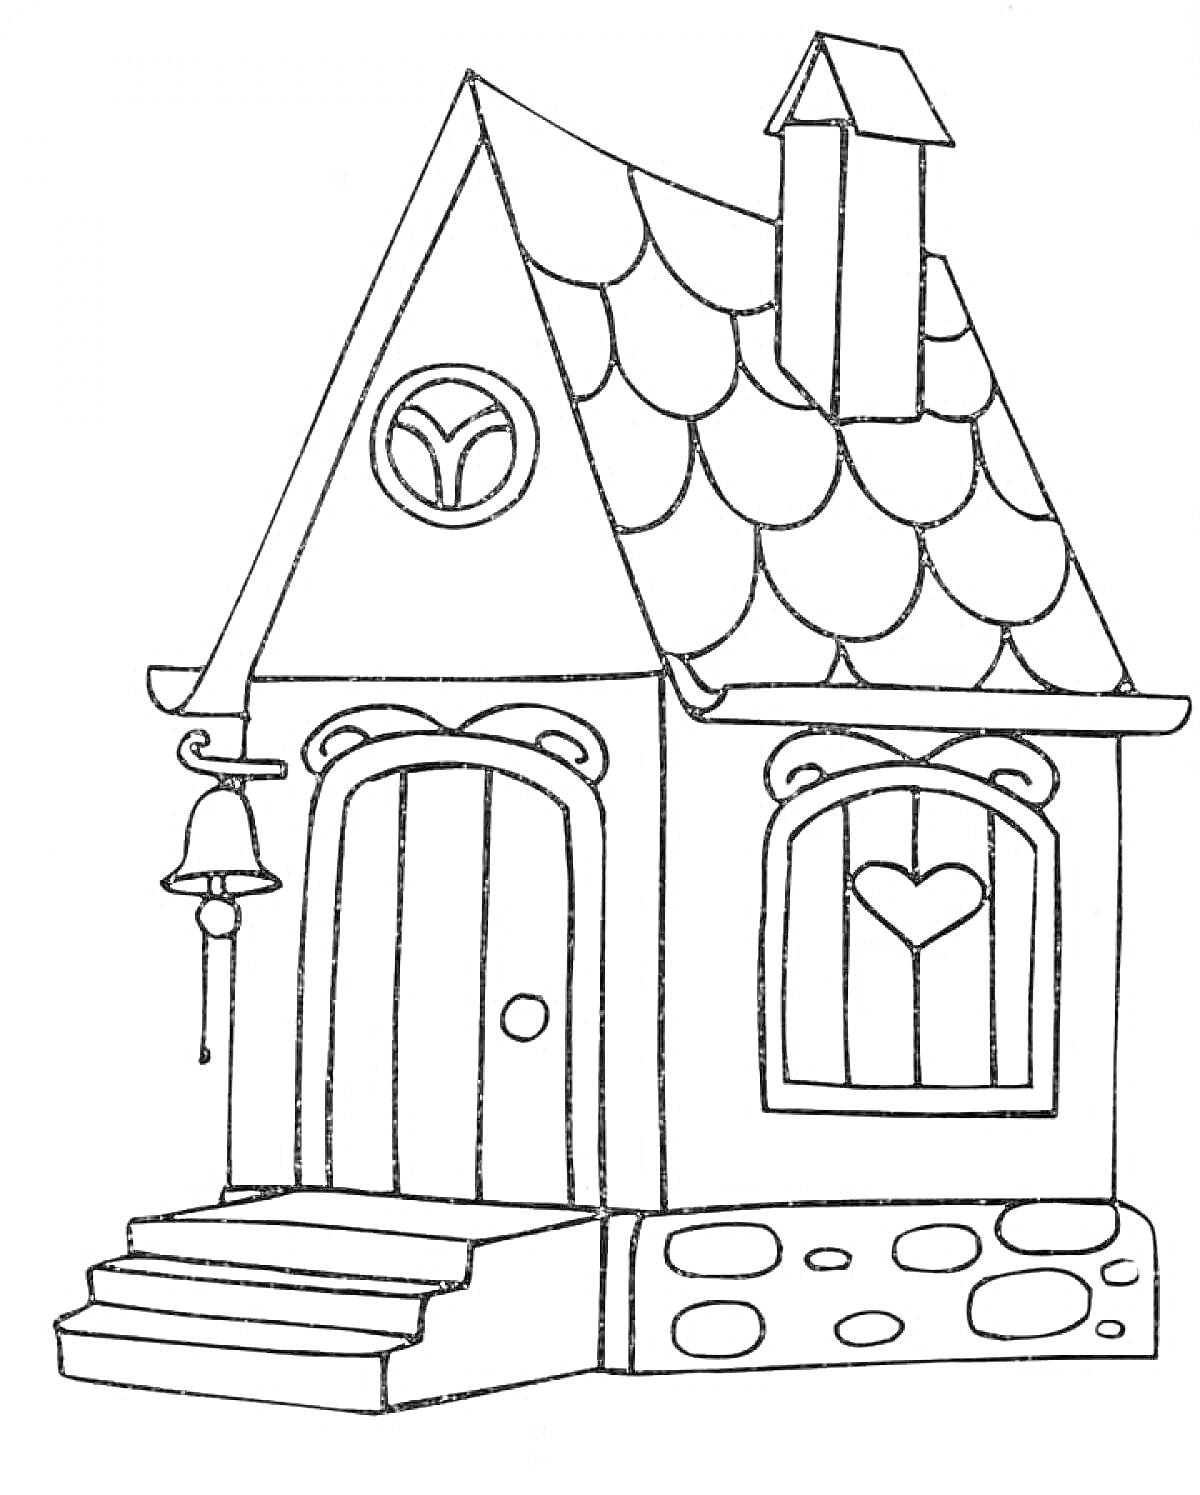 Раскраска Домик с крыльцом, колоколом, окном с сердцем и трубой